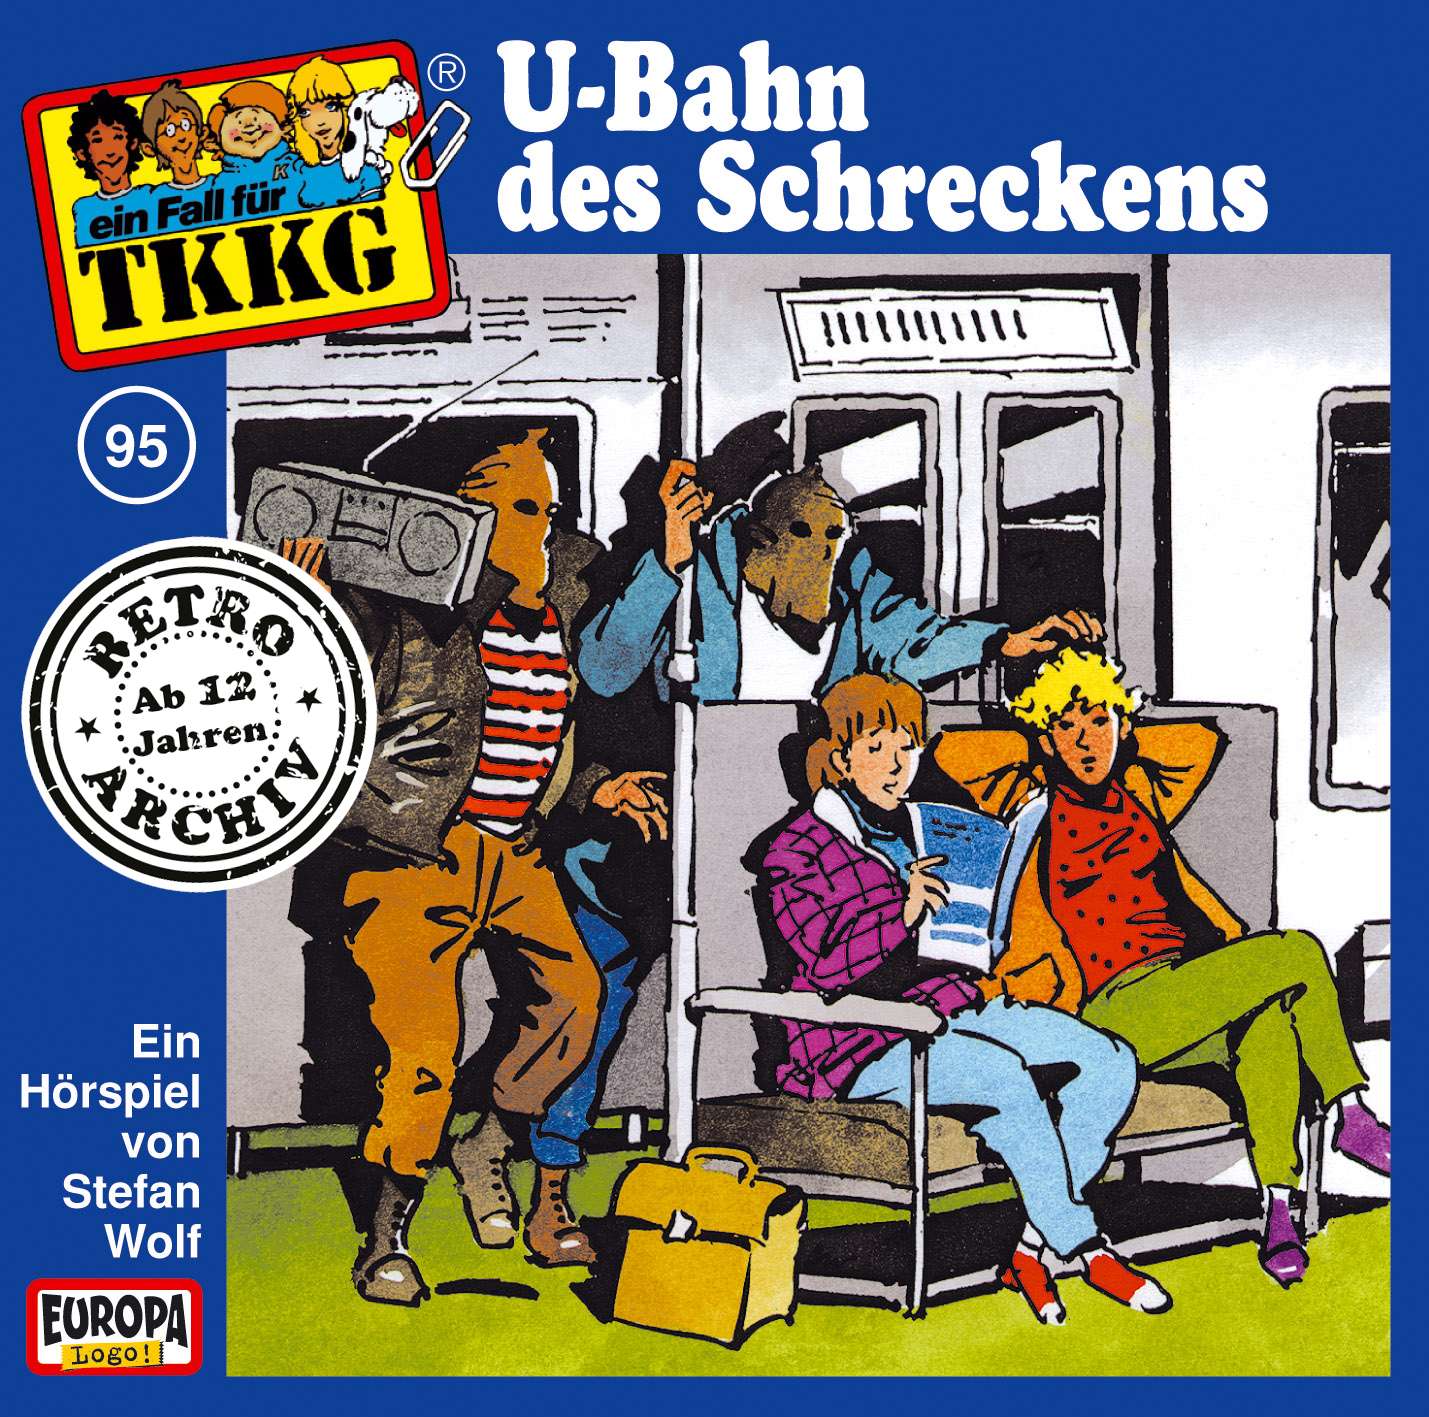 TKKG Retro-Archiv - U-Bahn des Schreckens